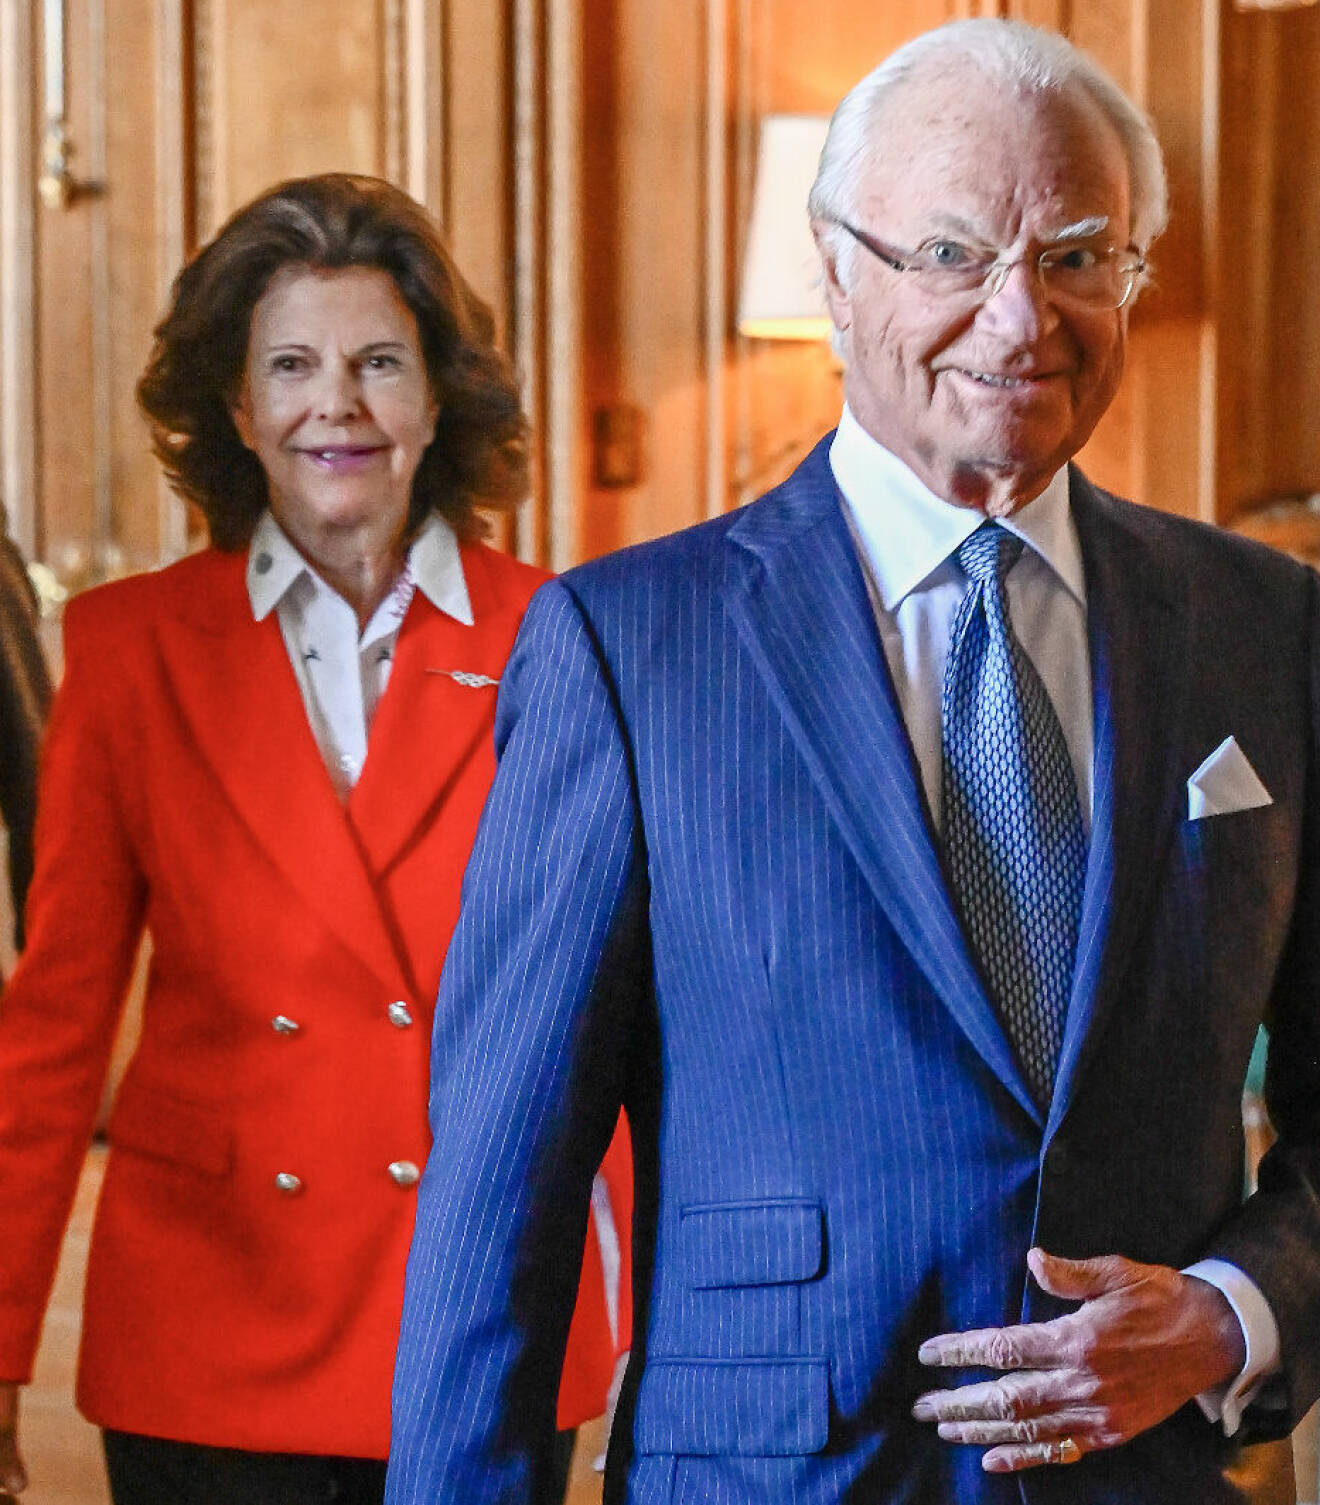 Kungen i blå kostym och drottning Silvia i rött